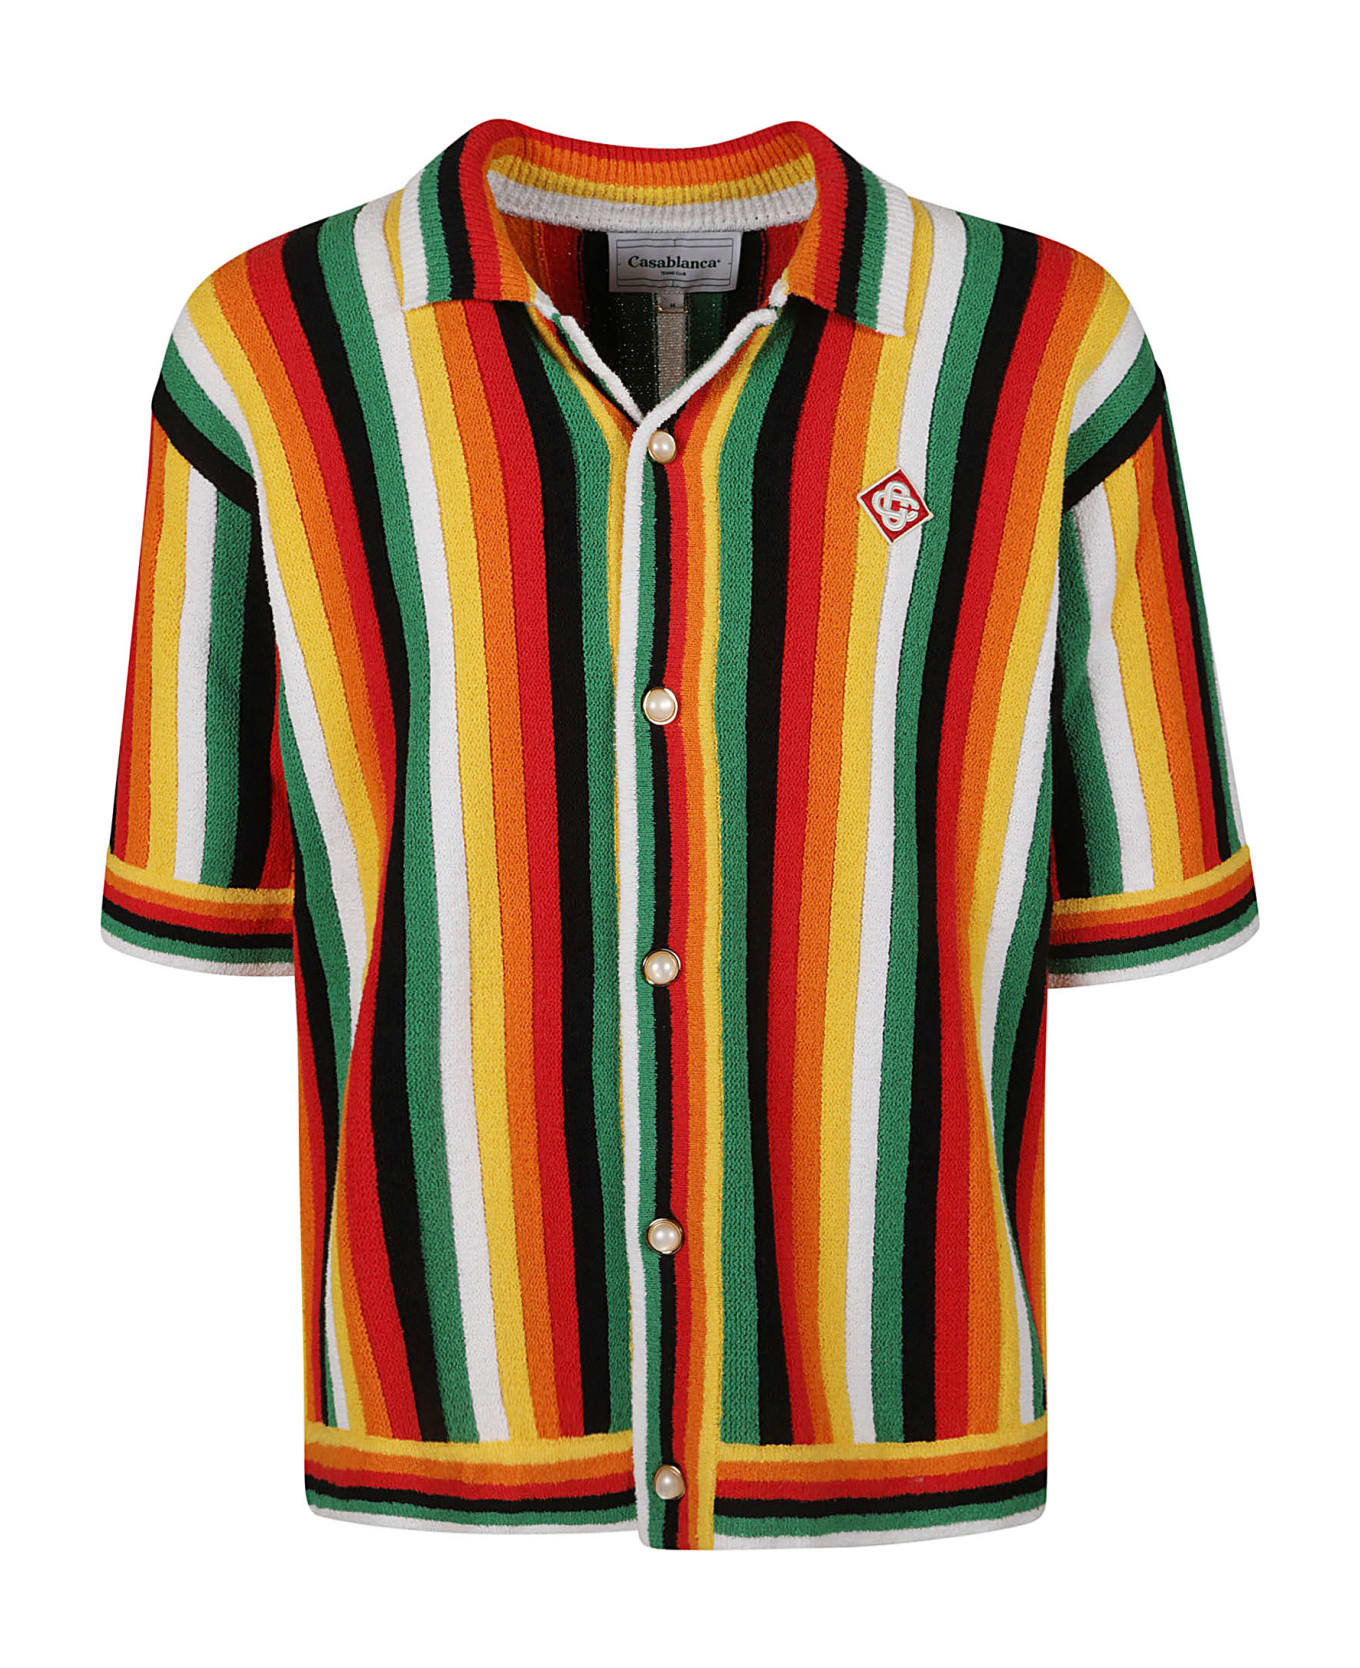 Casablanca Multicolored Terry Shirt - Multicolor シャツ